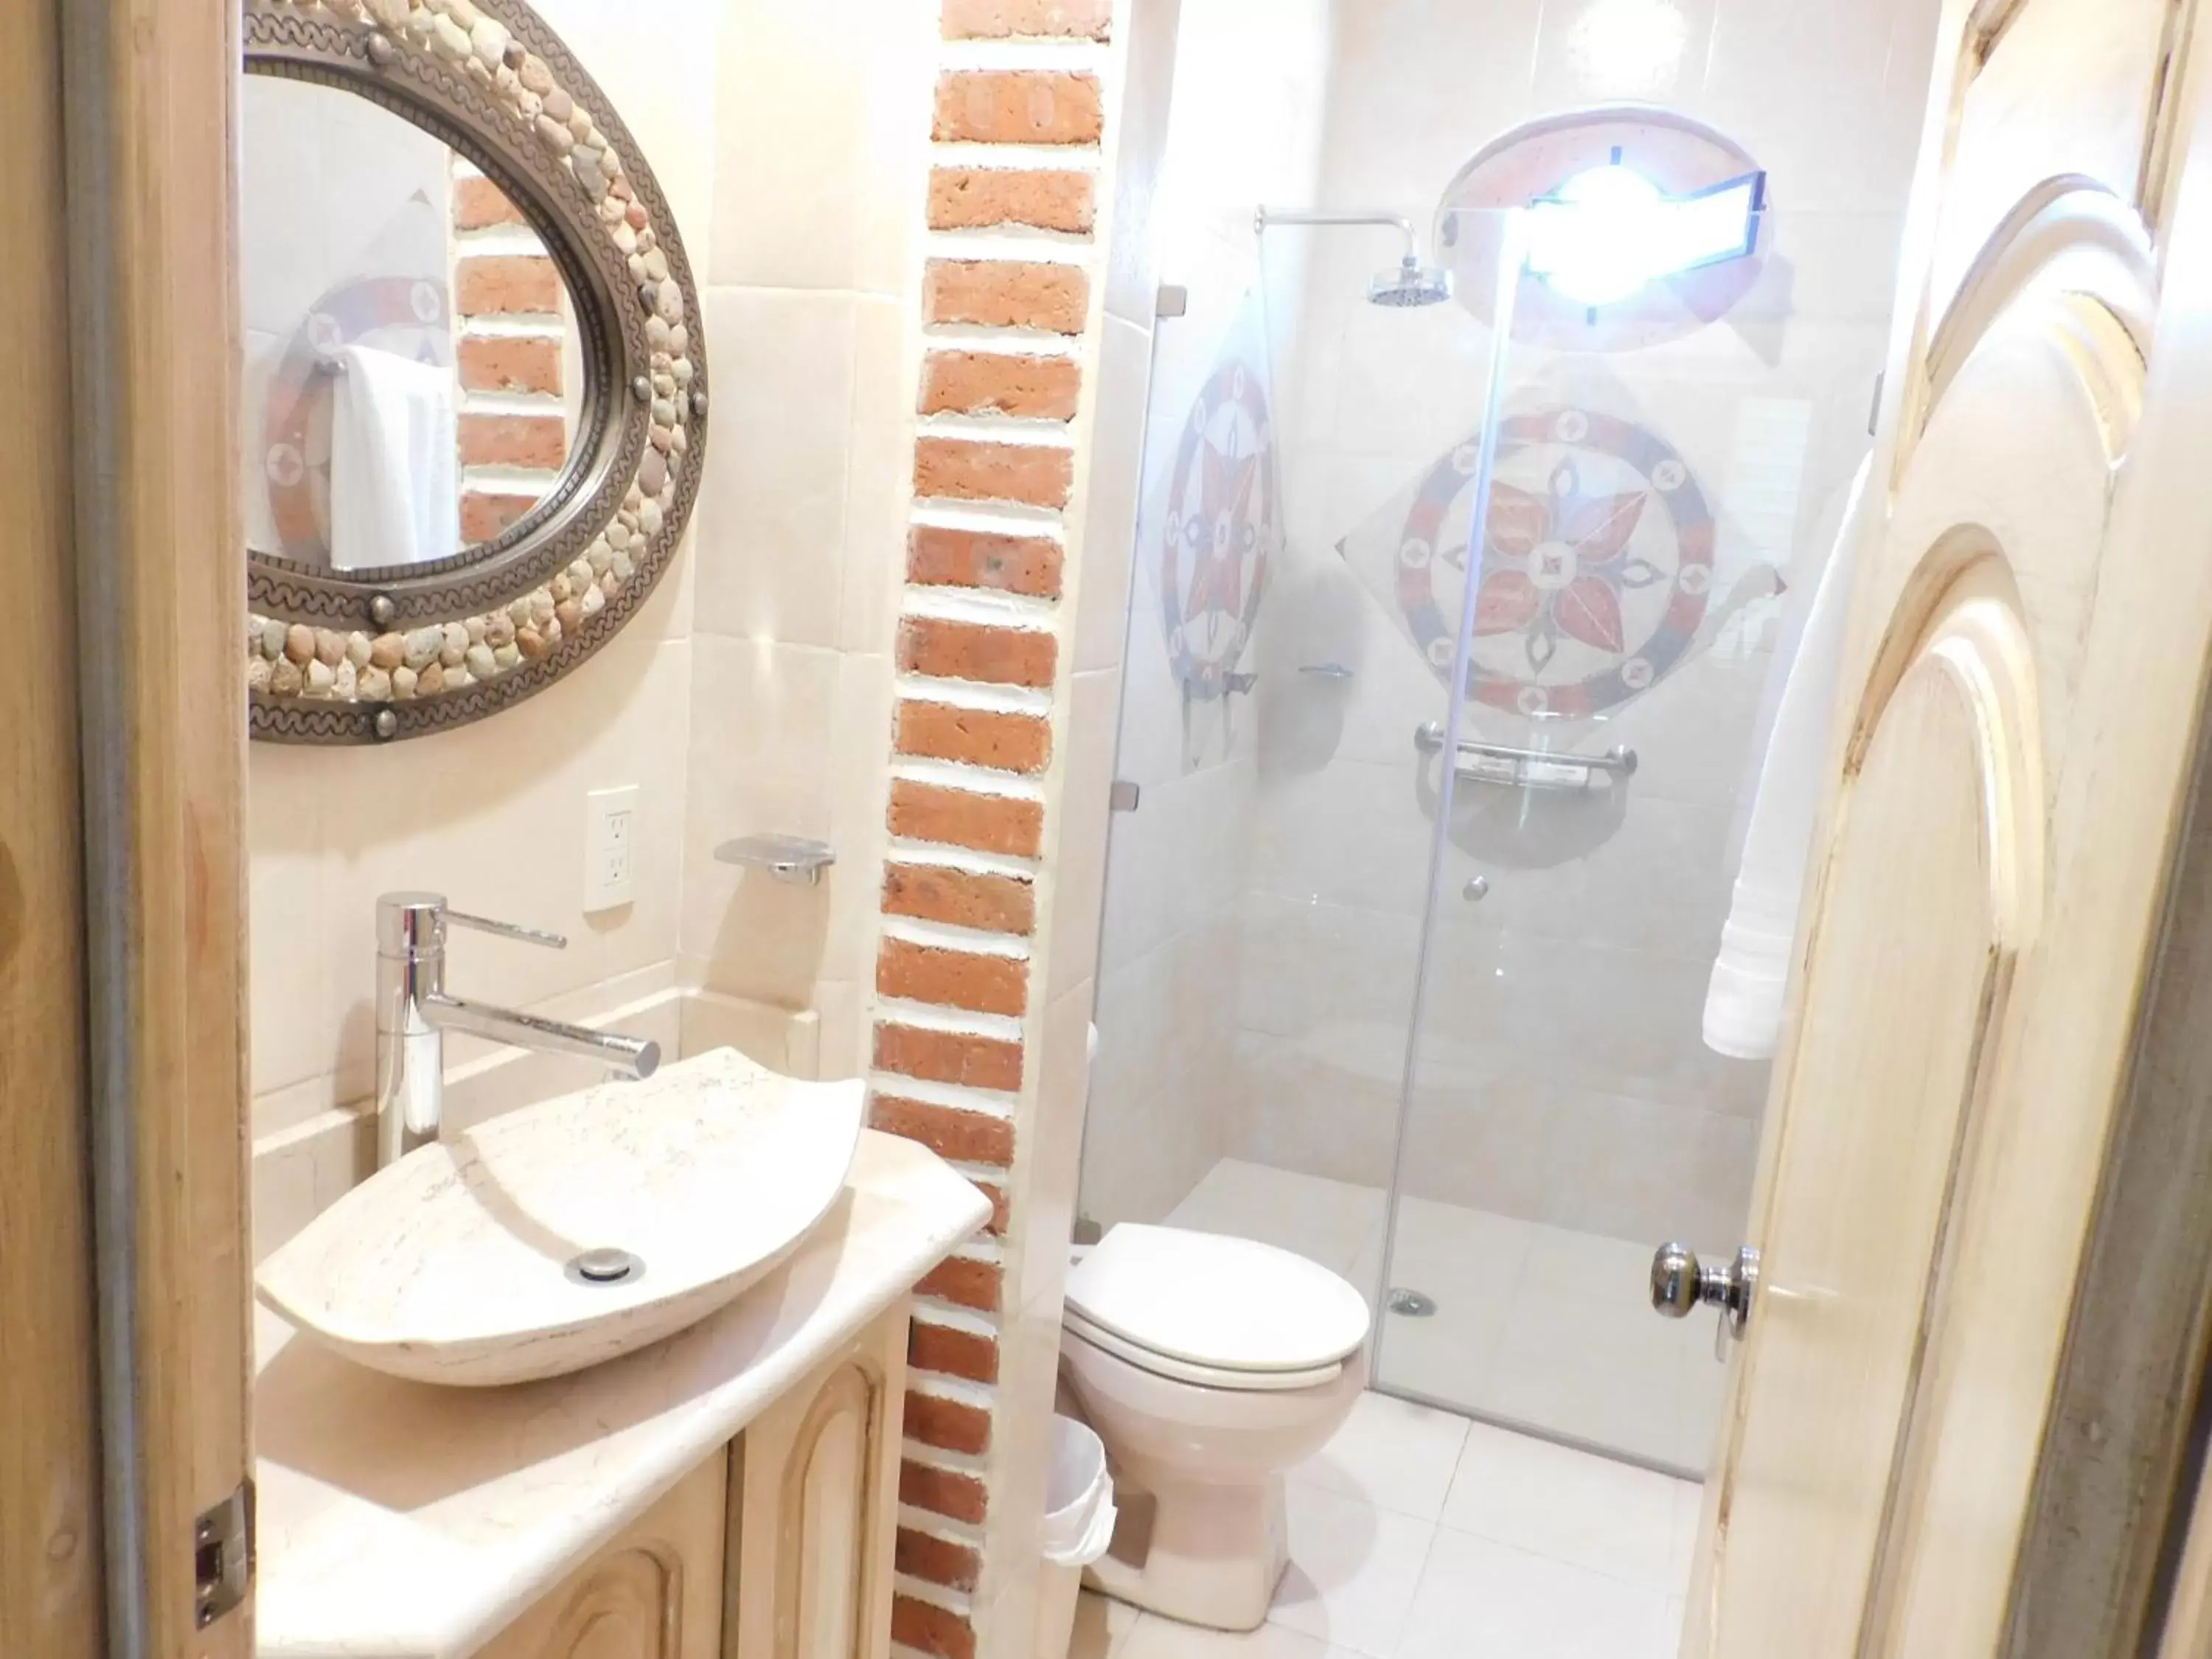 Bathroom in Vista Del Sol Apartments